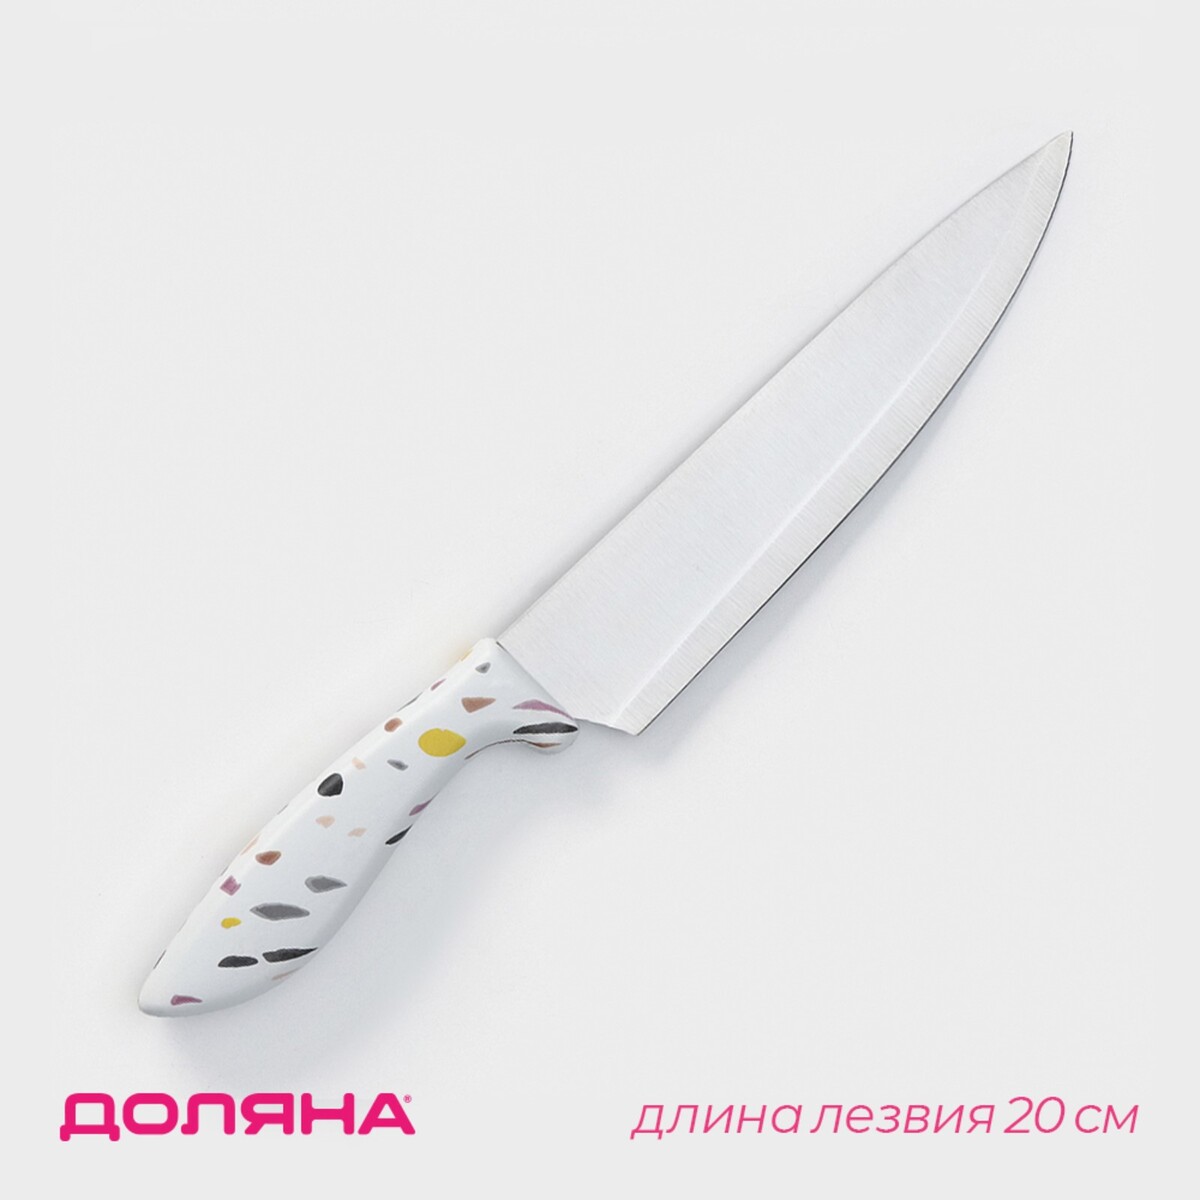 Нож - шеф доляна sparkle, лезвие 20 см, цвет белый нож топорик кухонный доляна sparkle лезвие 20 см белый